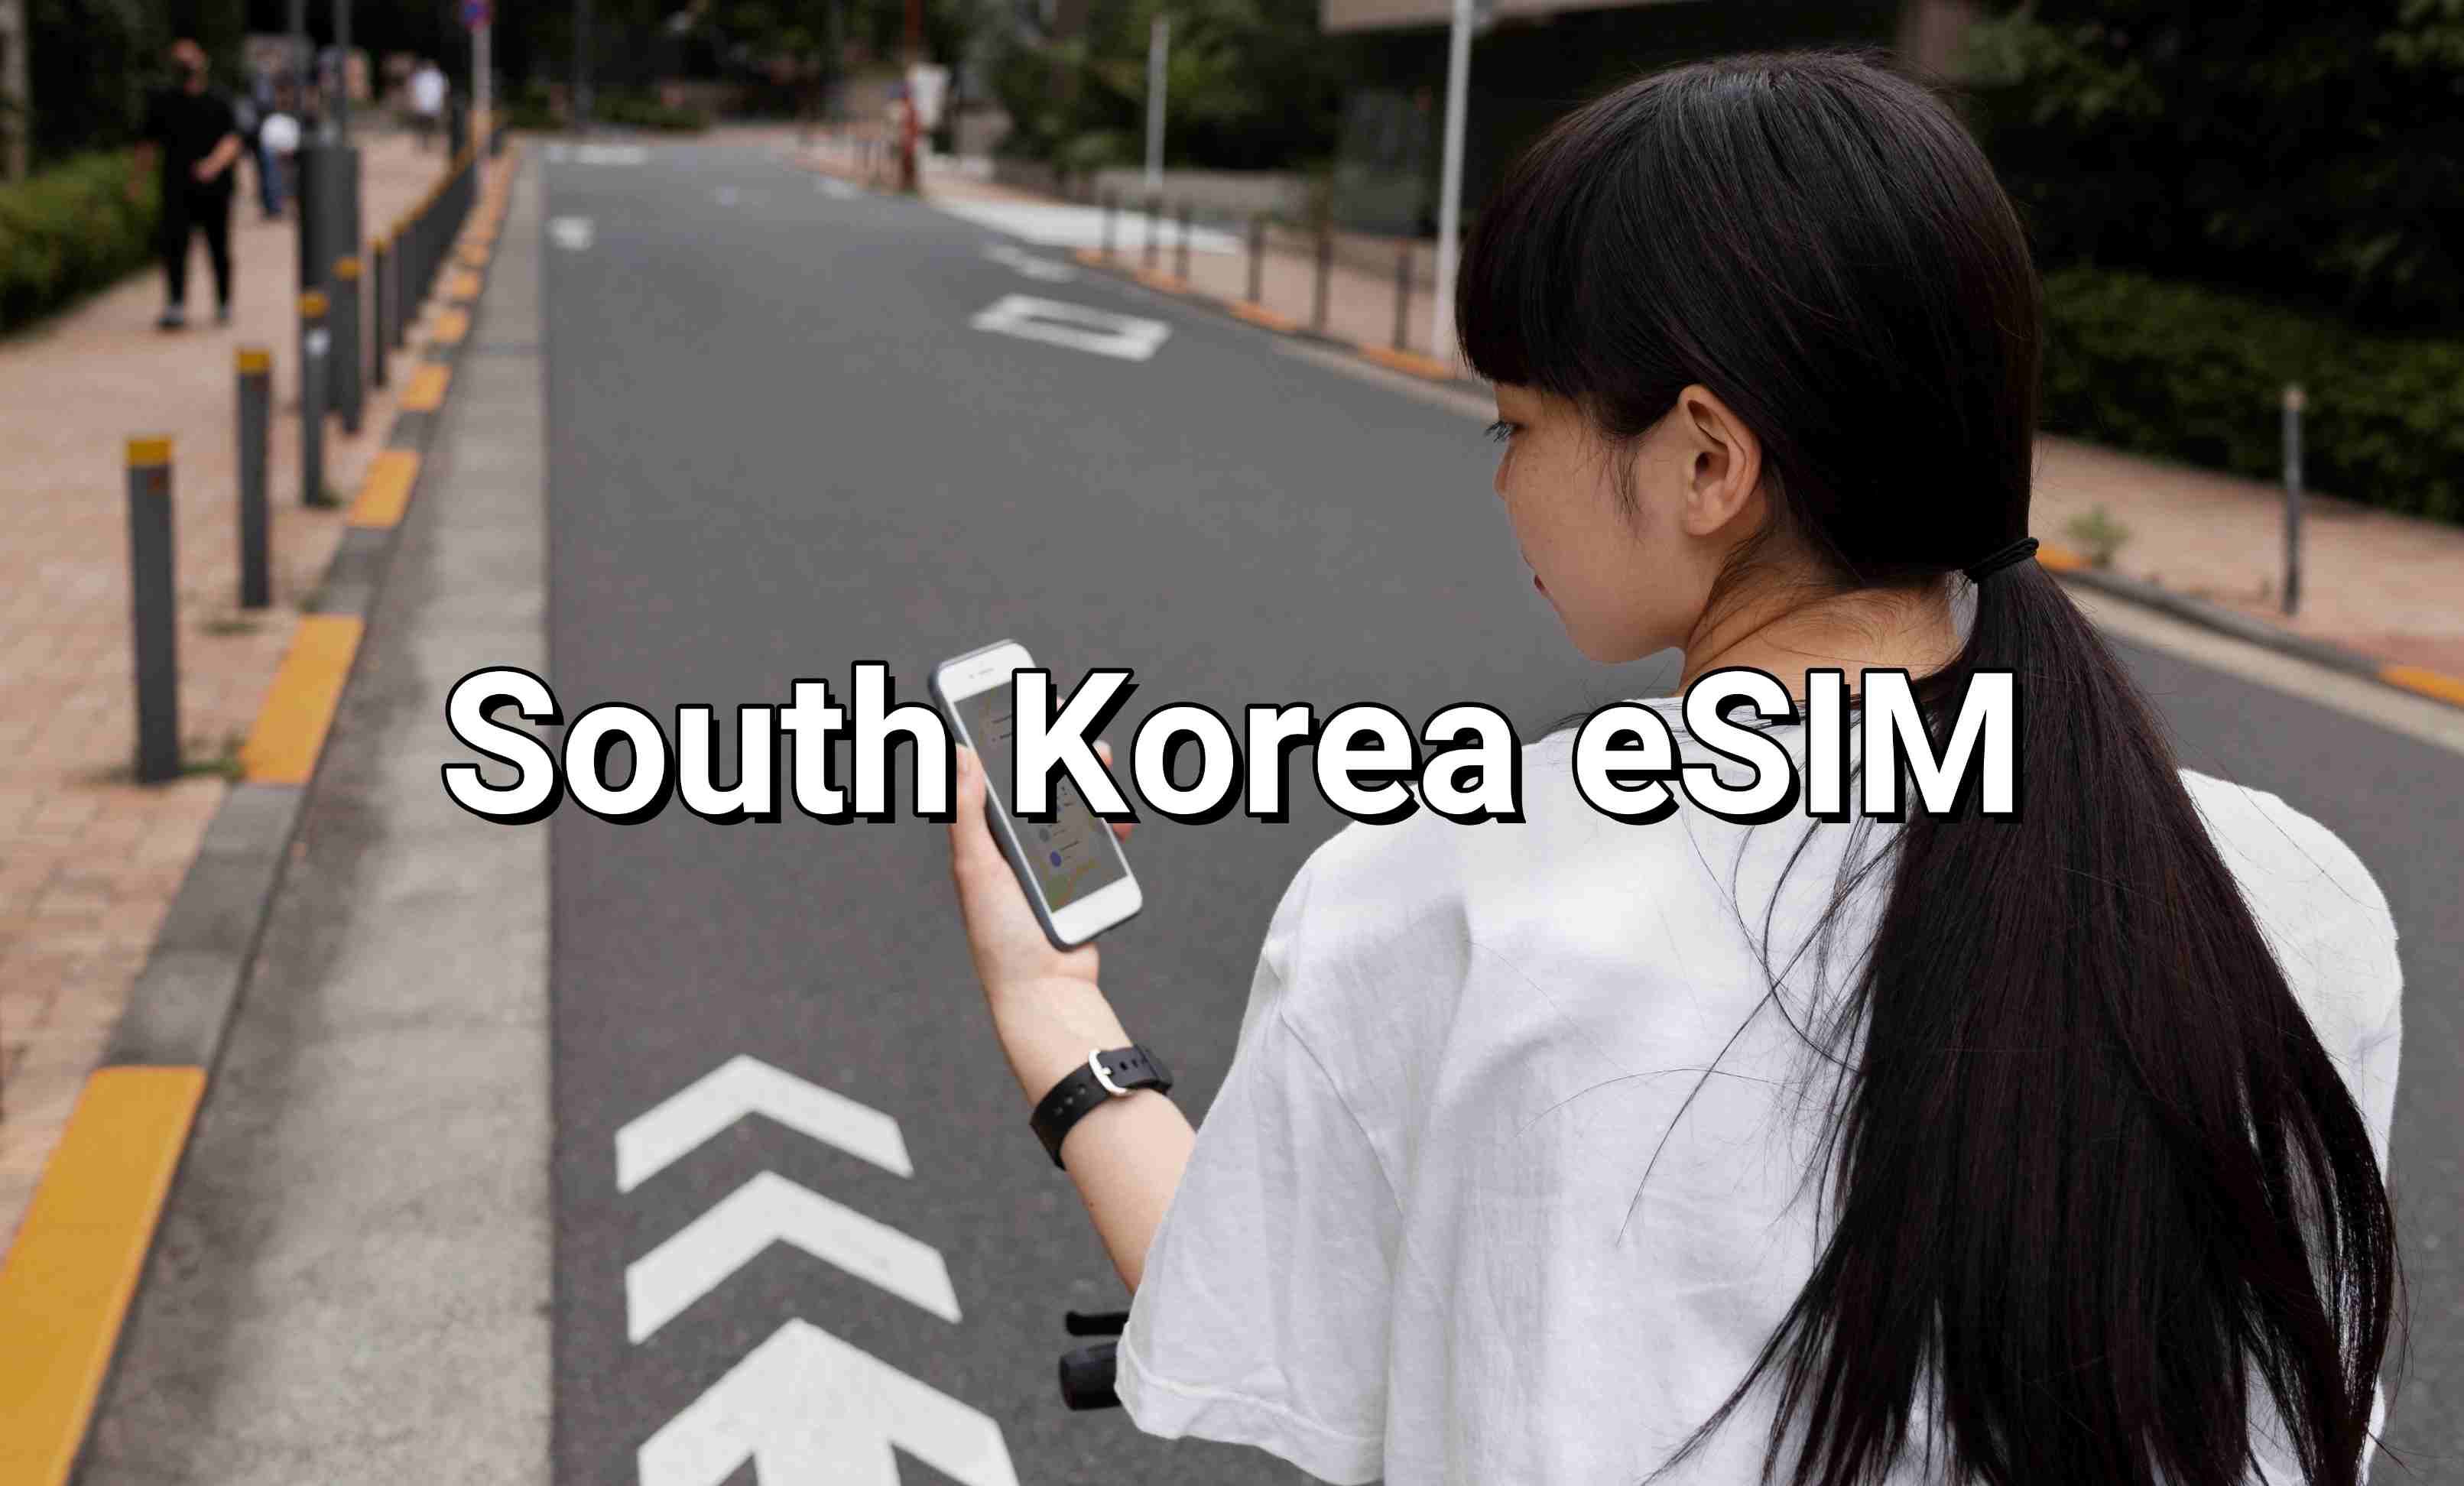 South Korea eSIM